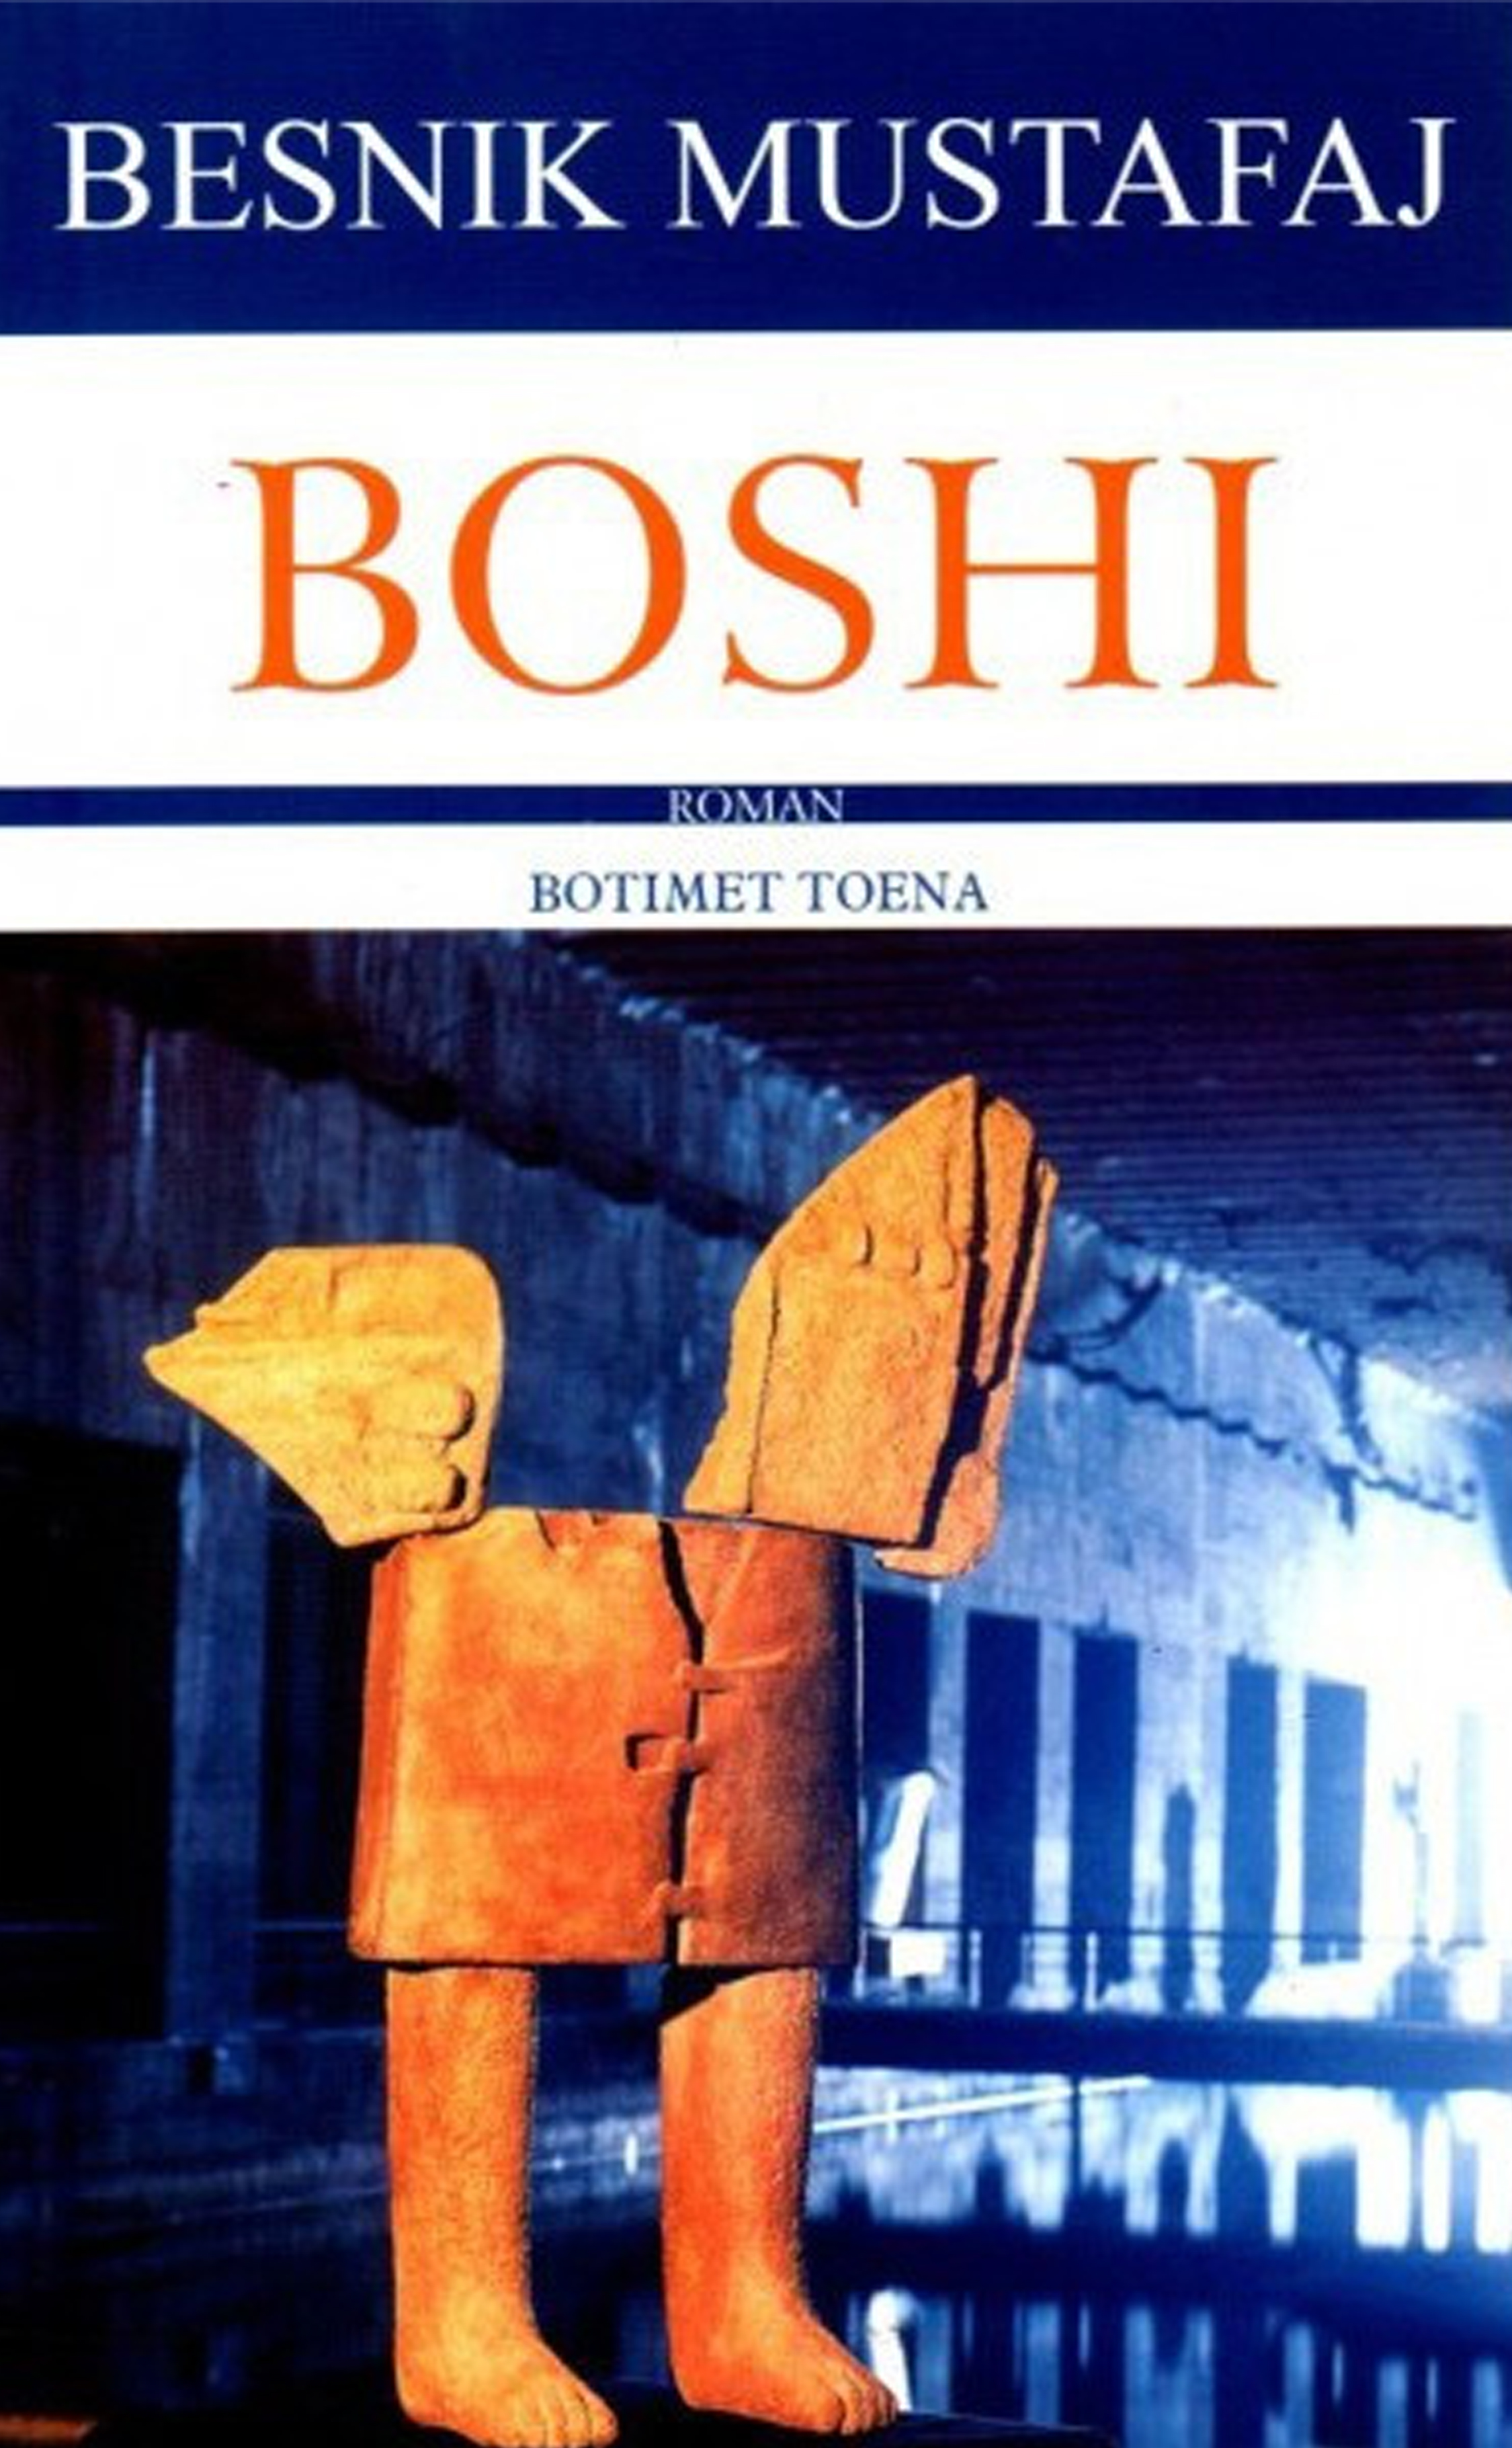 Boshi